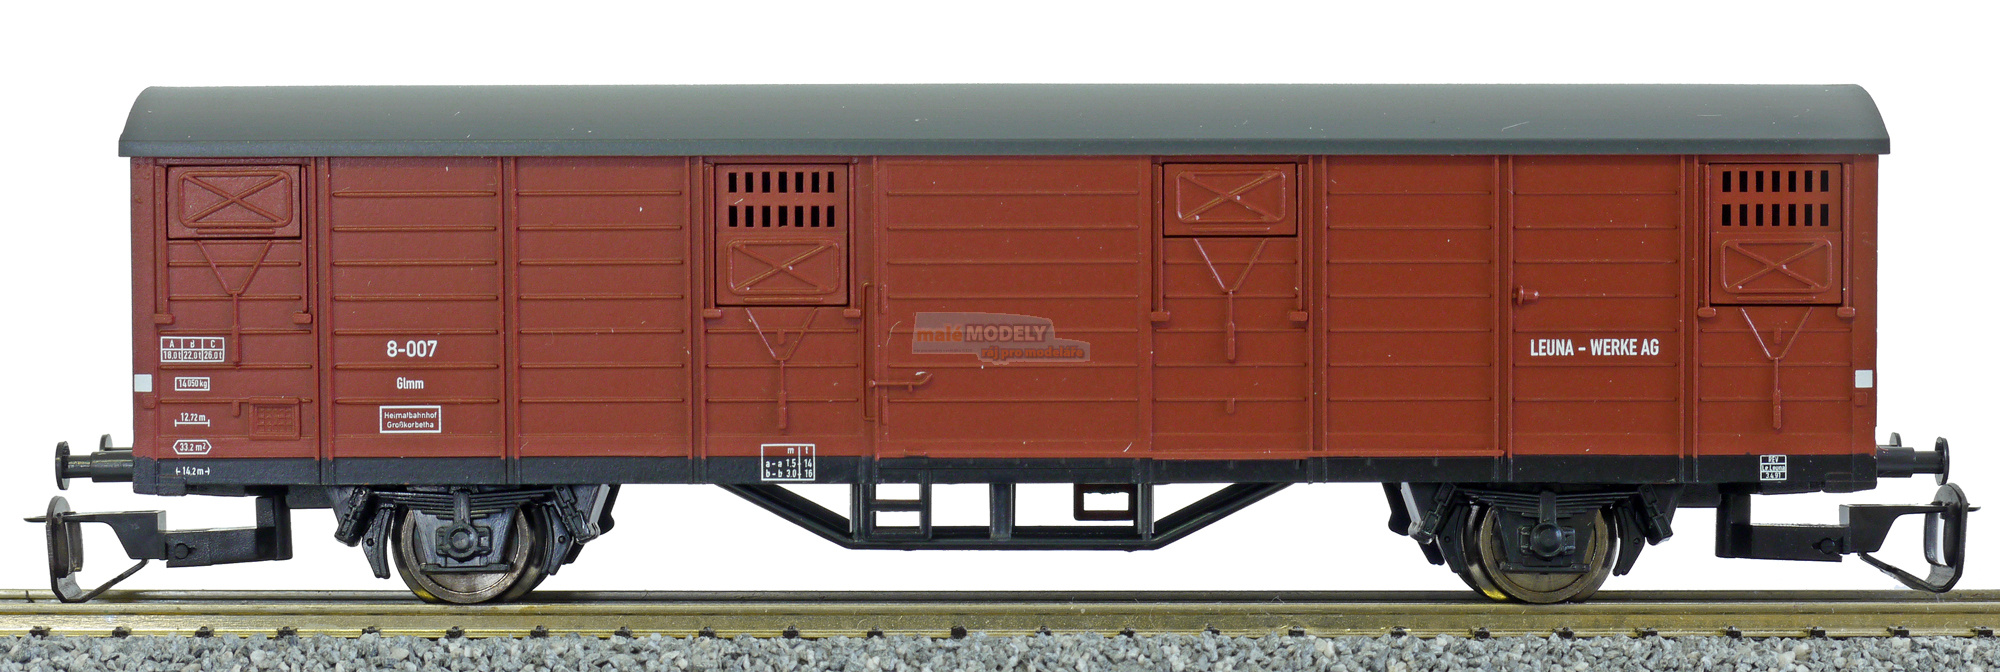 Krytý nákladní vůz červenohnědý s tmavě šedou střechou Leuna